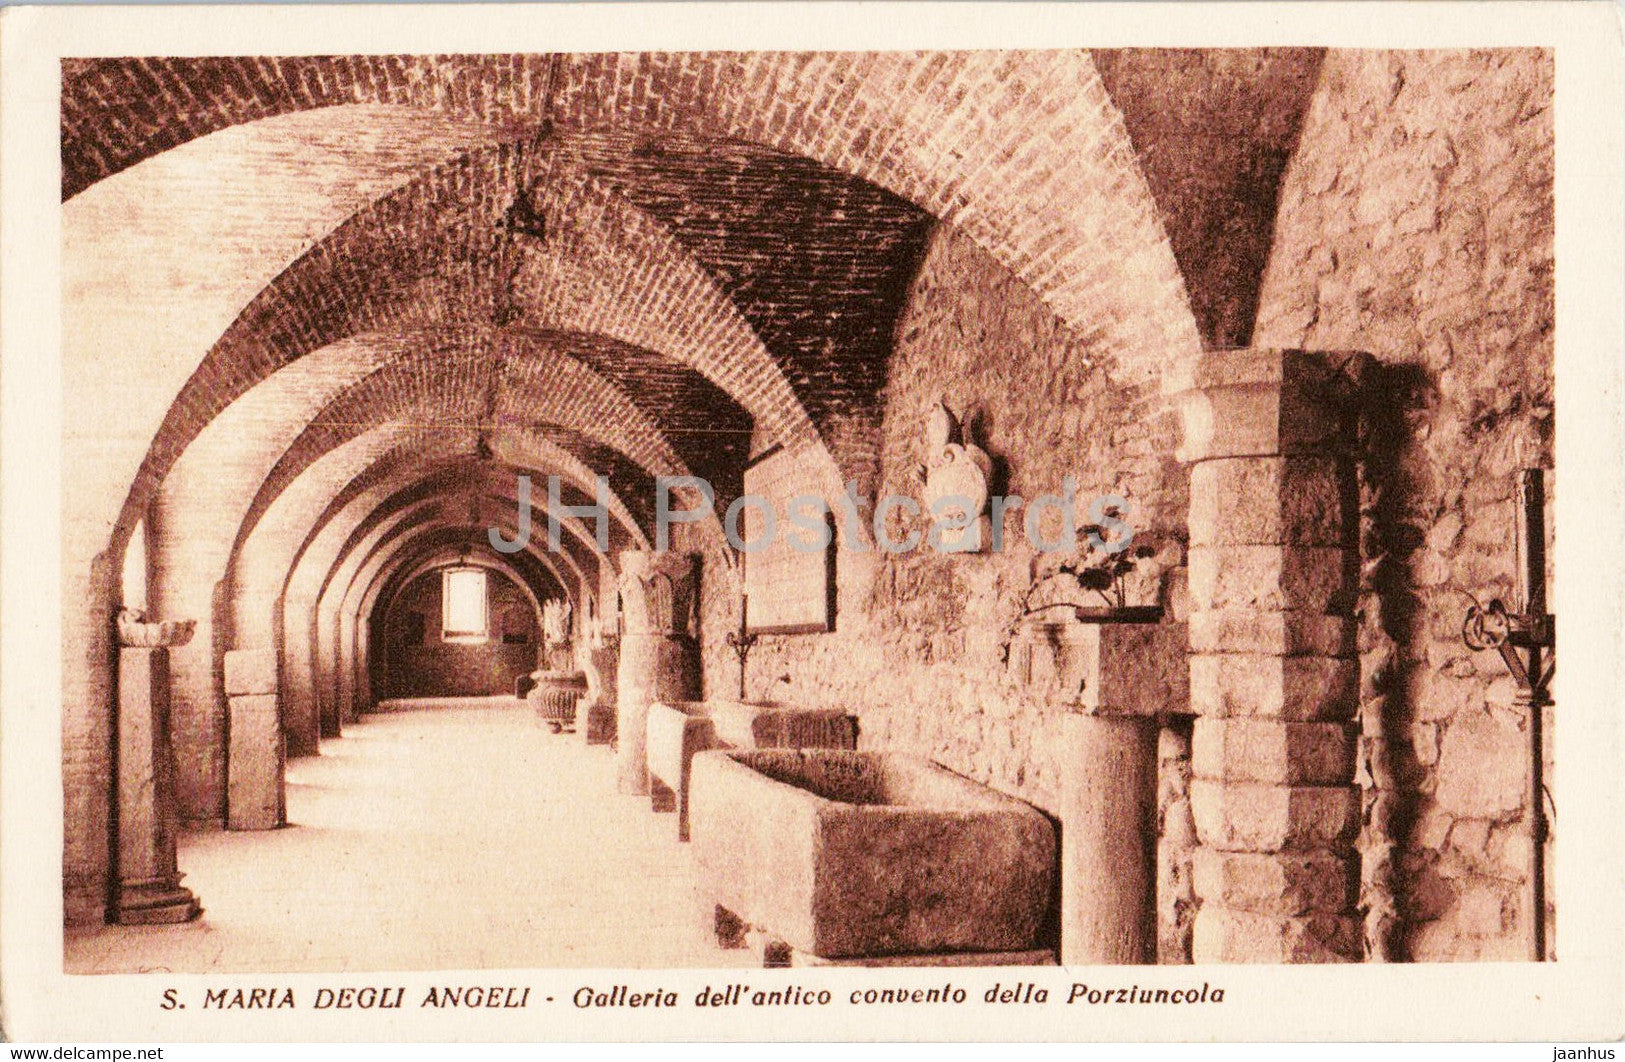 S Maria Degli Angeli - Galleria dell'antico convento della Porziuncola - old postcard - Italy - unused - JH Postcards